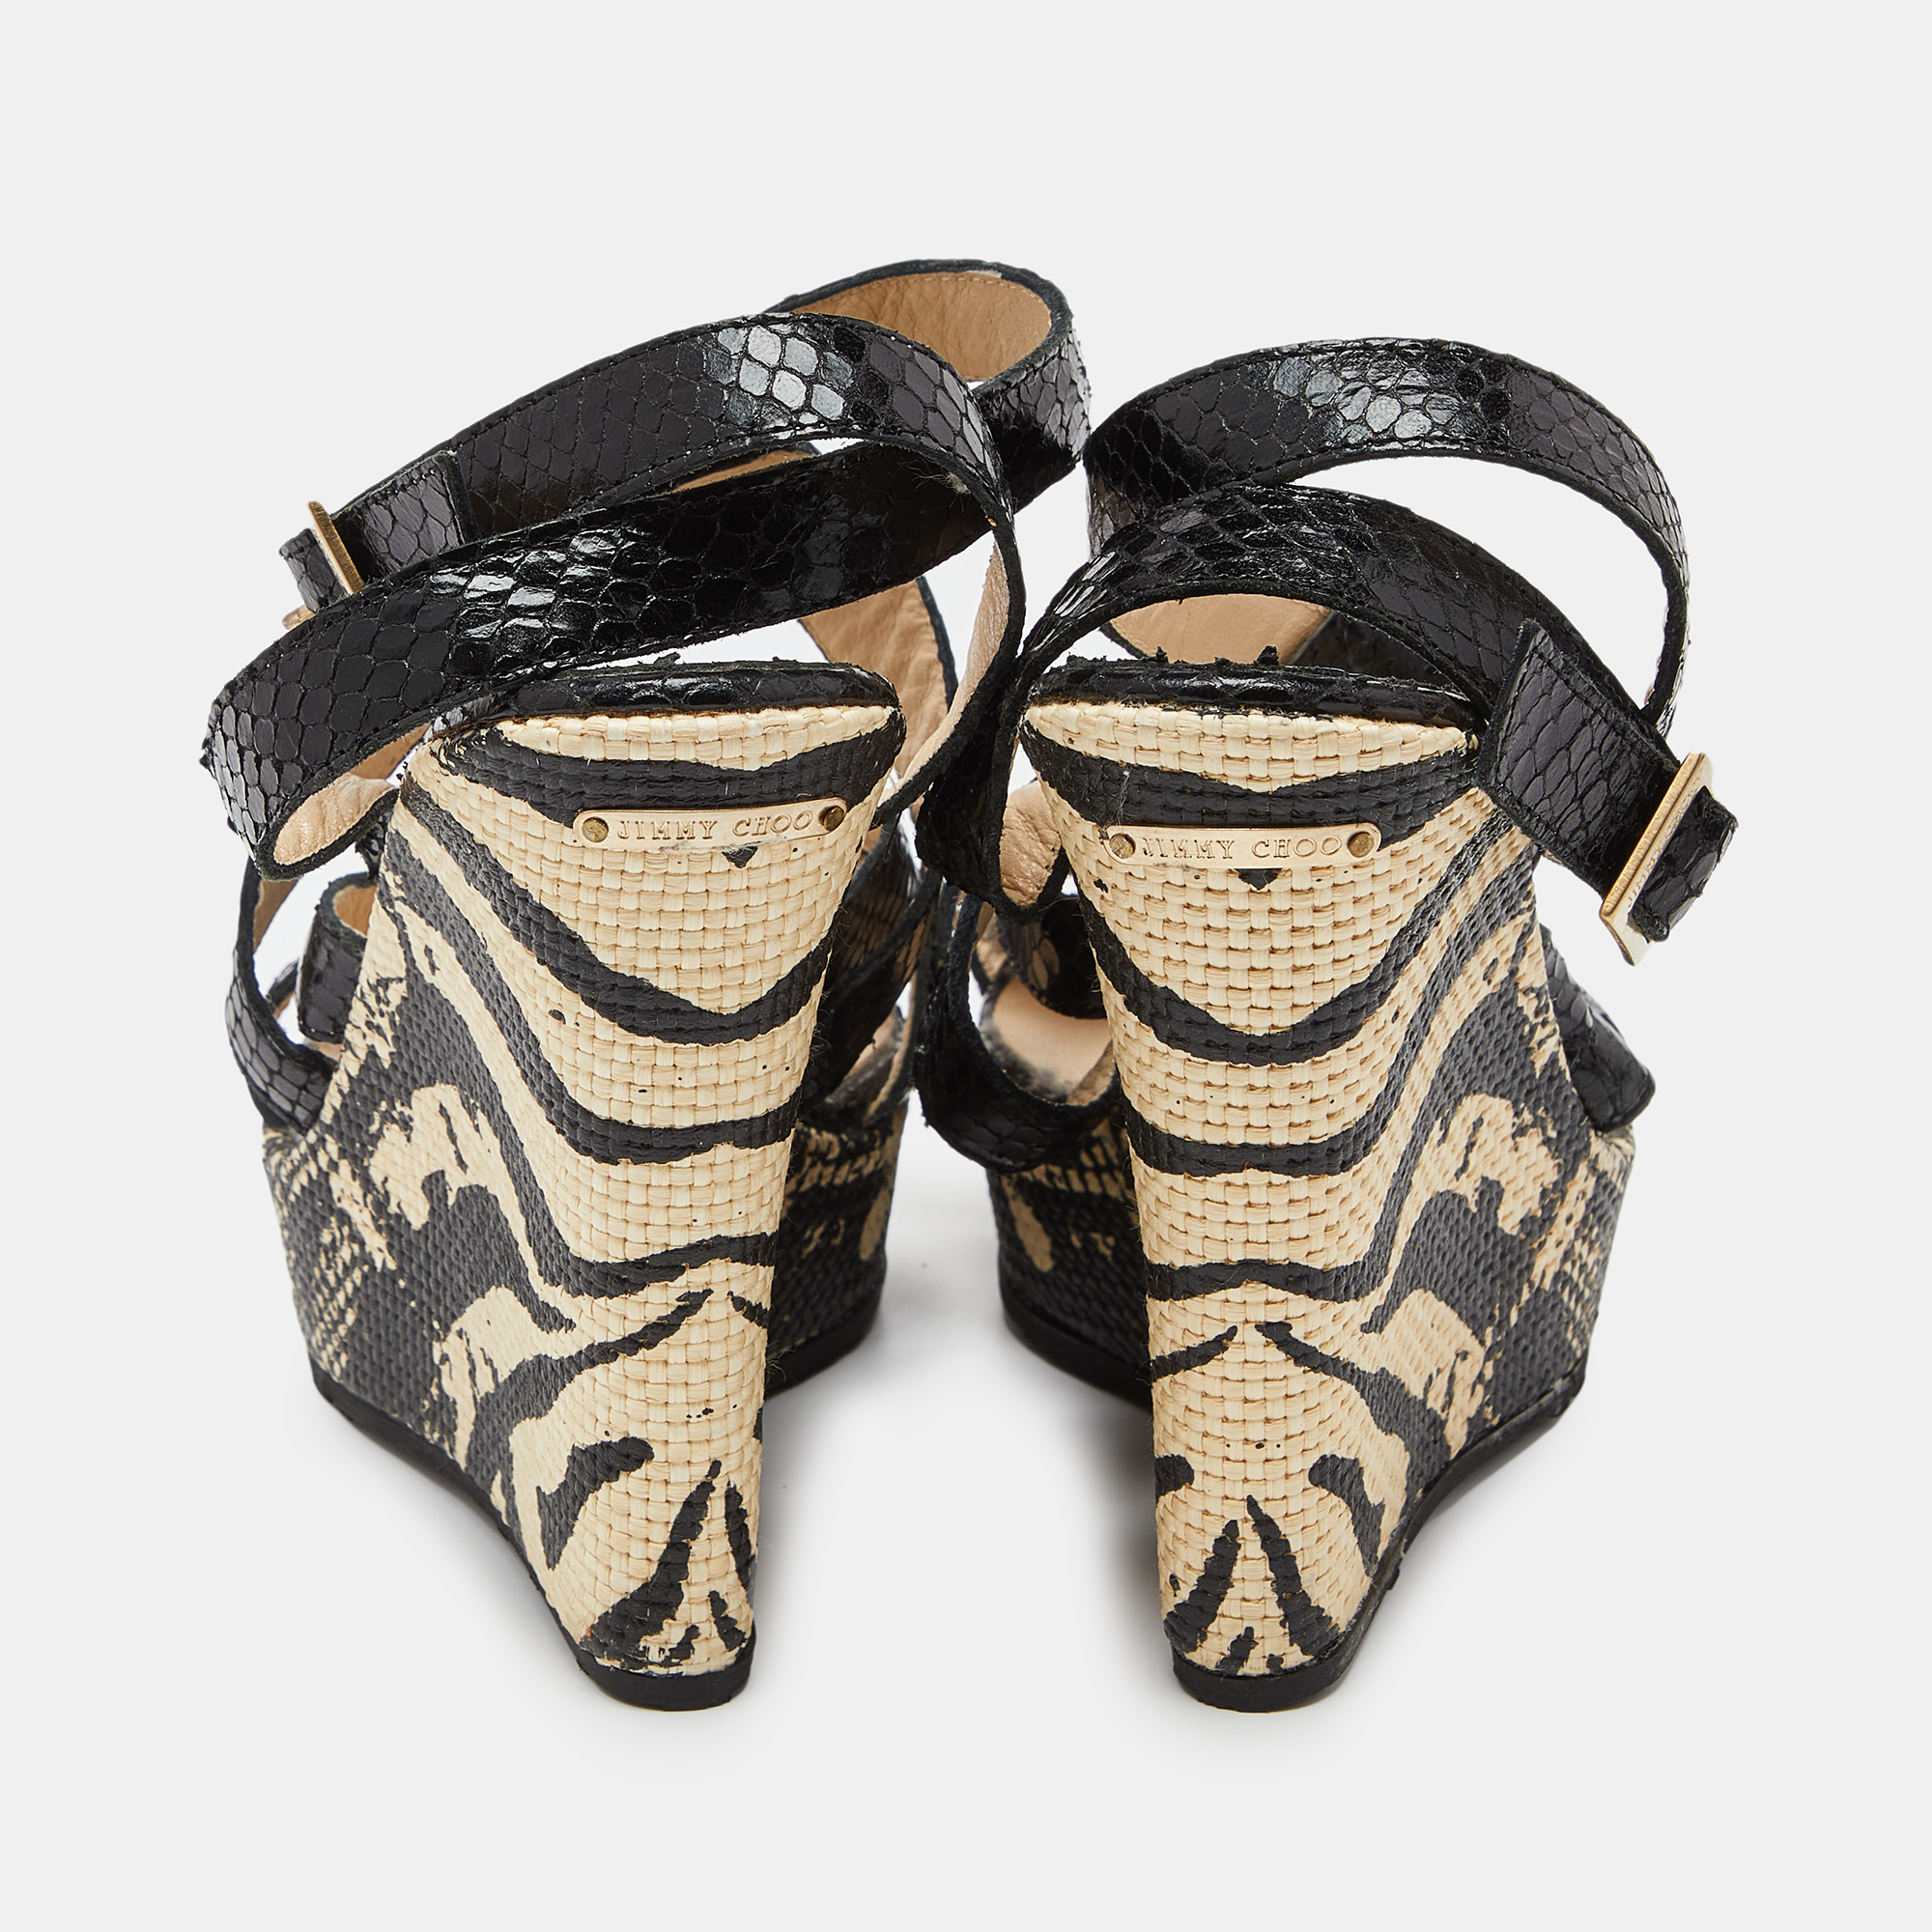 Jimmy Choo Black Snakeskin Platform Wedge Sandals Size 38